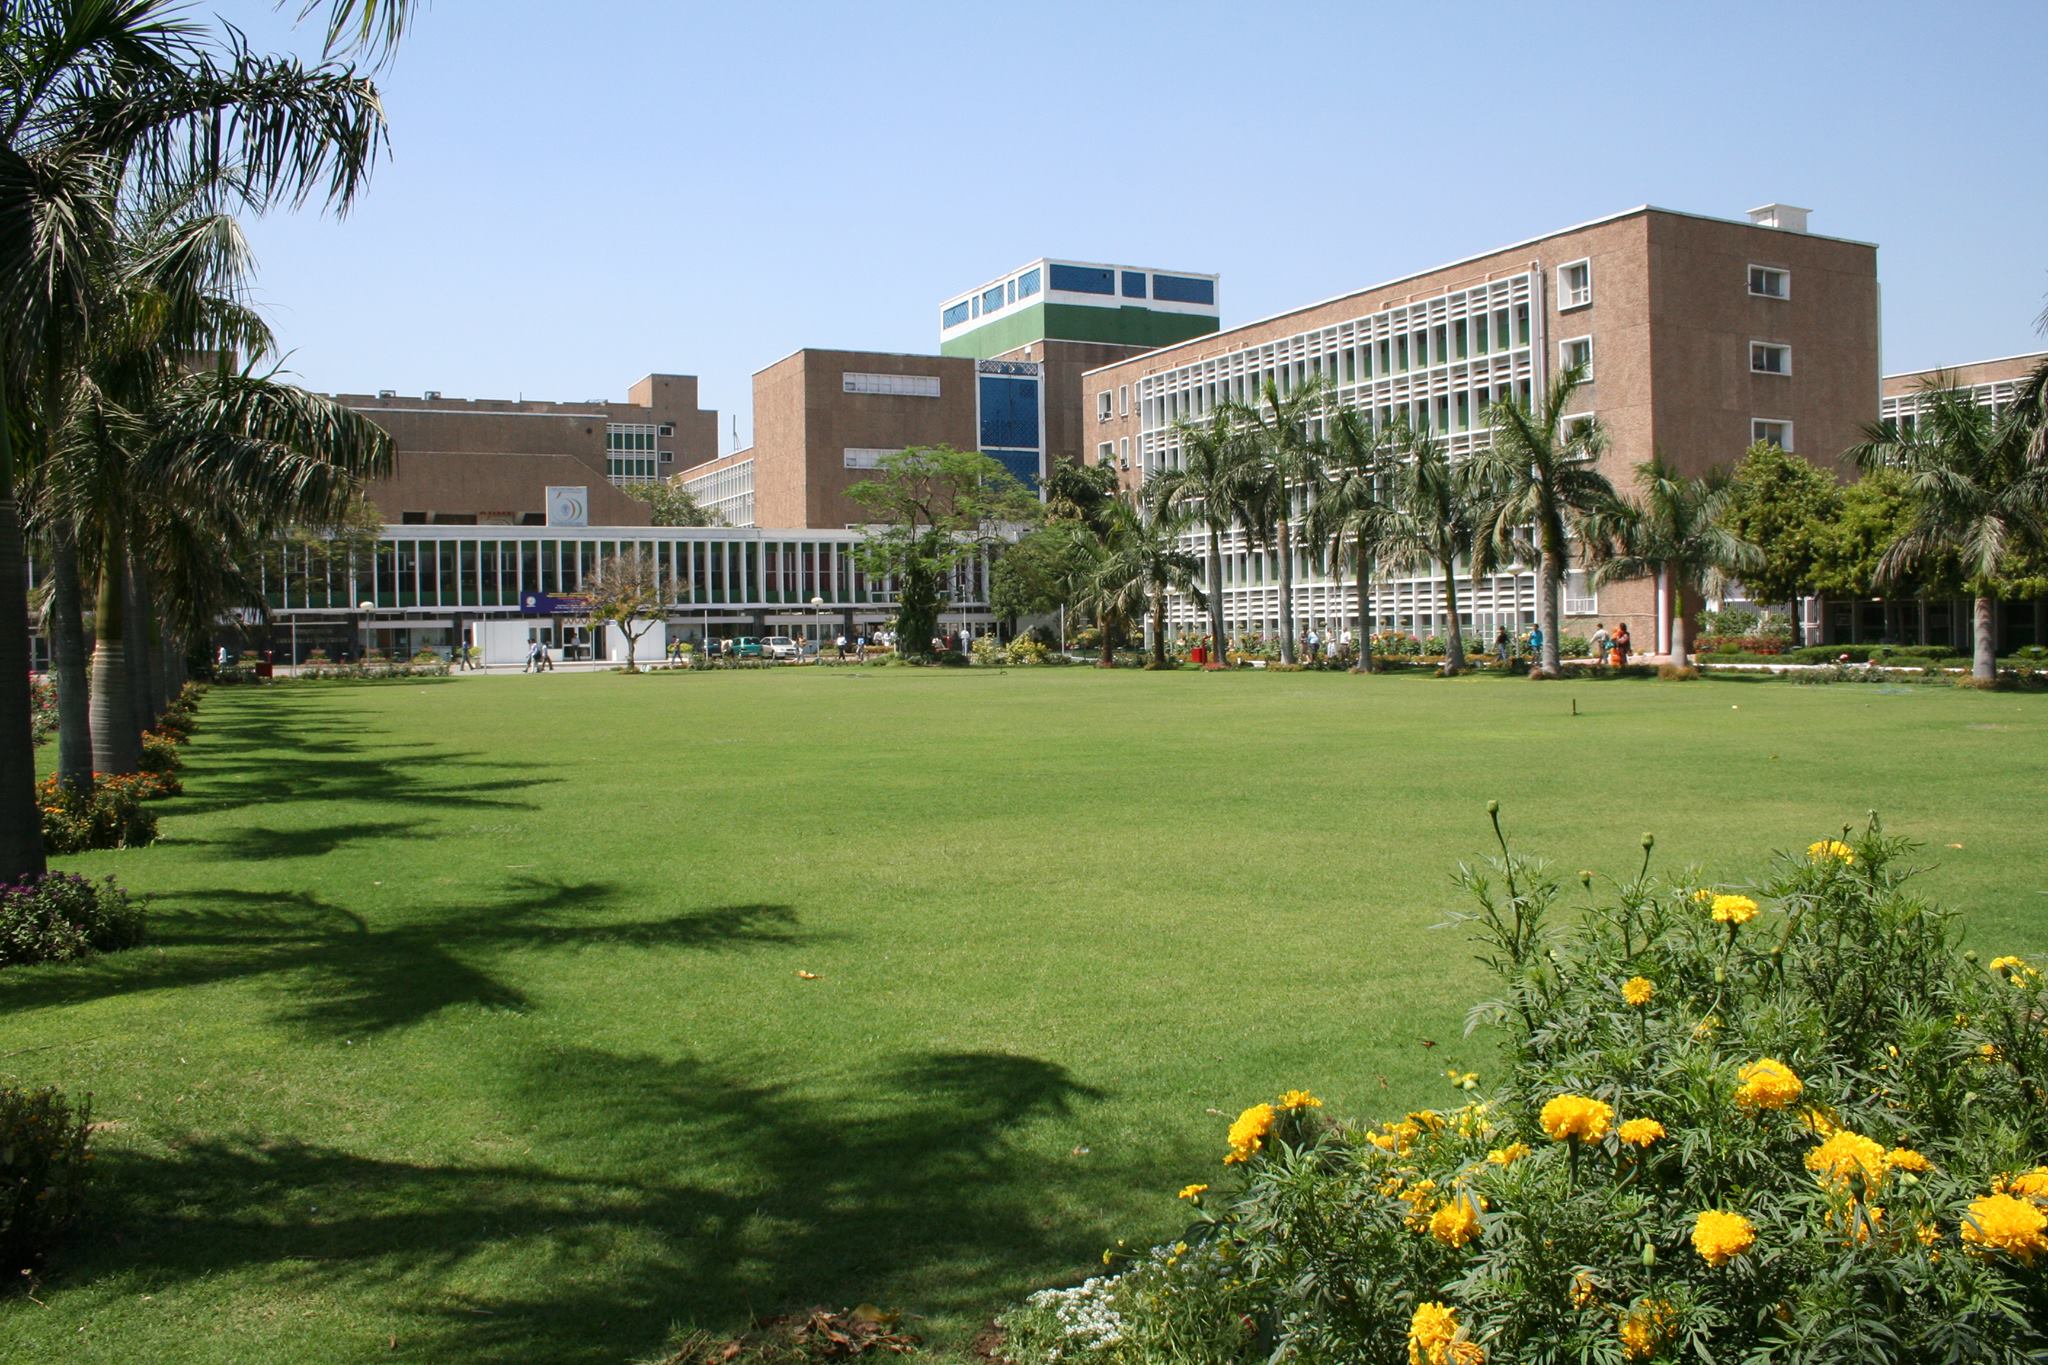 All India Institute of Medical Sciences (AIIMS), Delhi